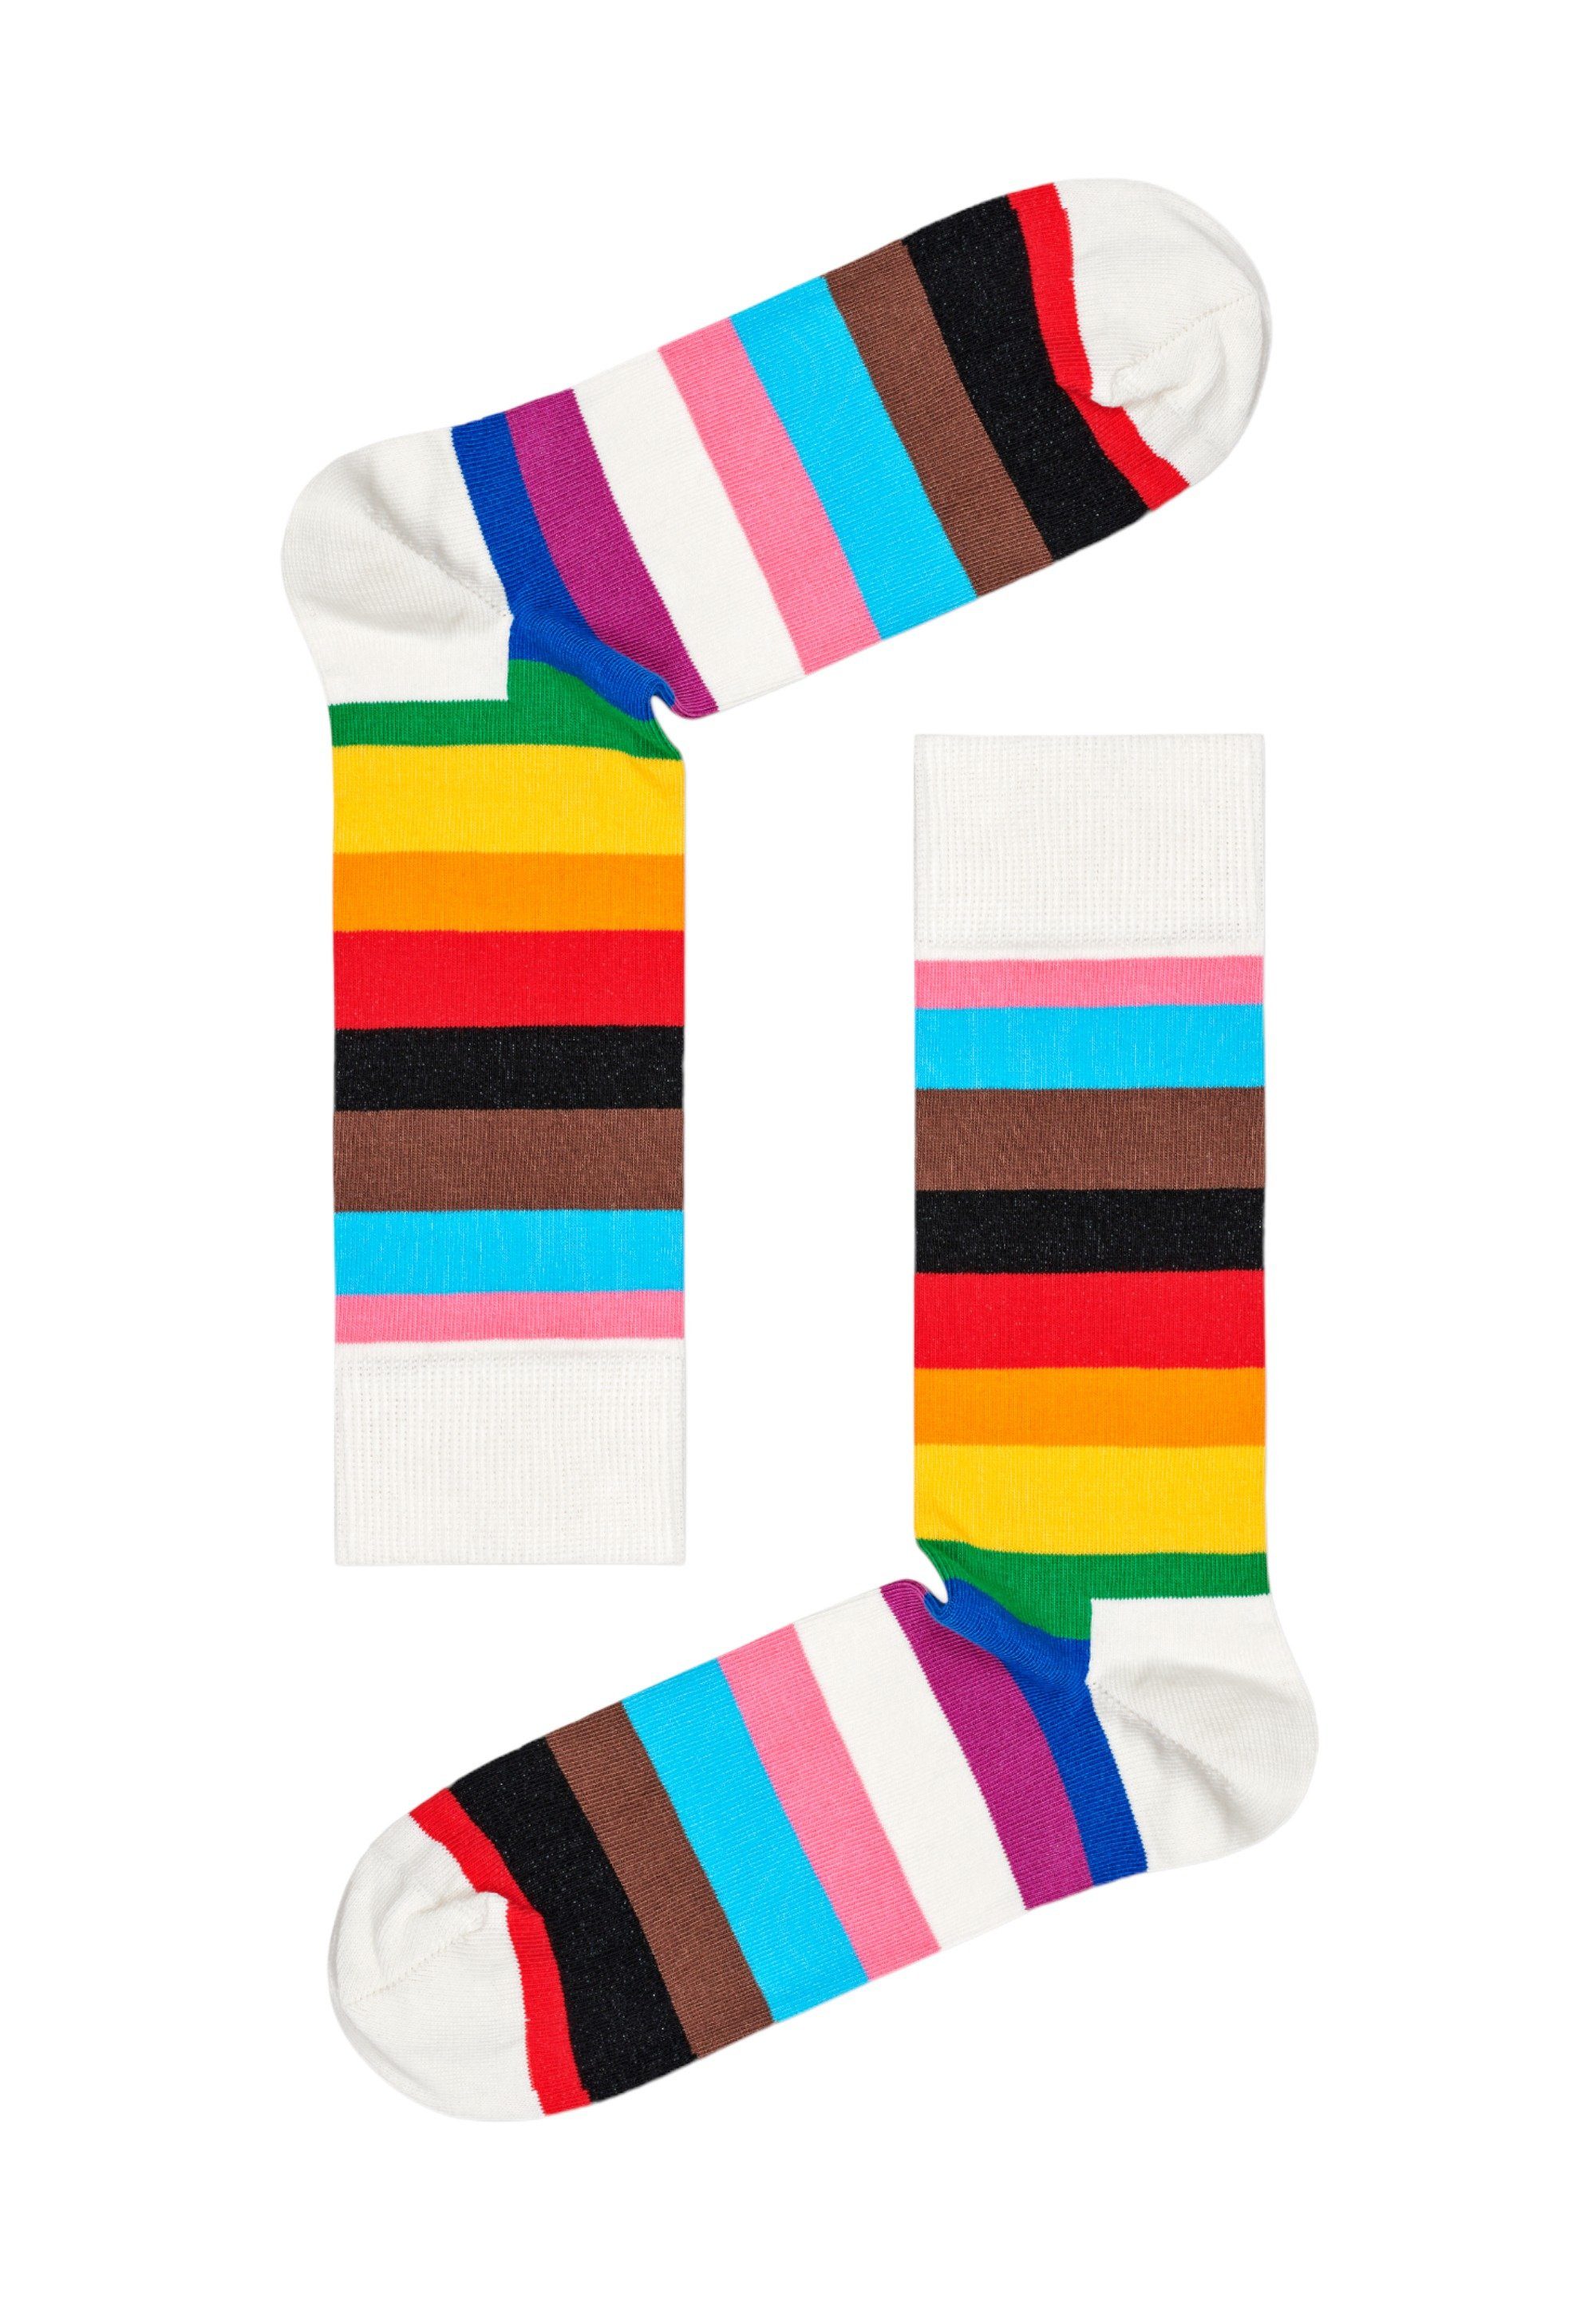 Baumwolle Socks 2 Socks 3-Pack Set Happy Basicsocken Pride Pride Gift gekämmte